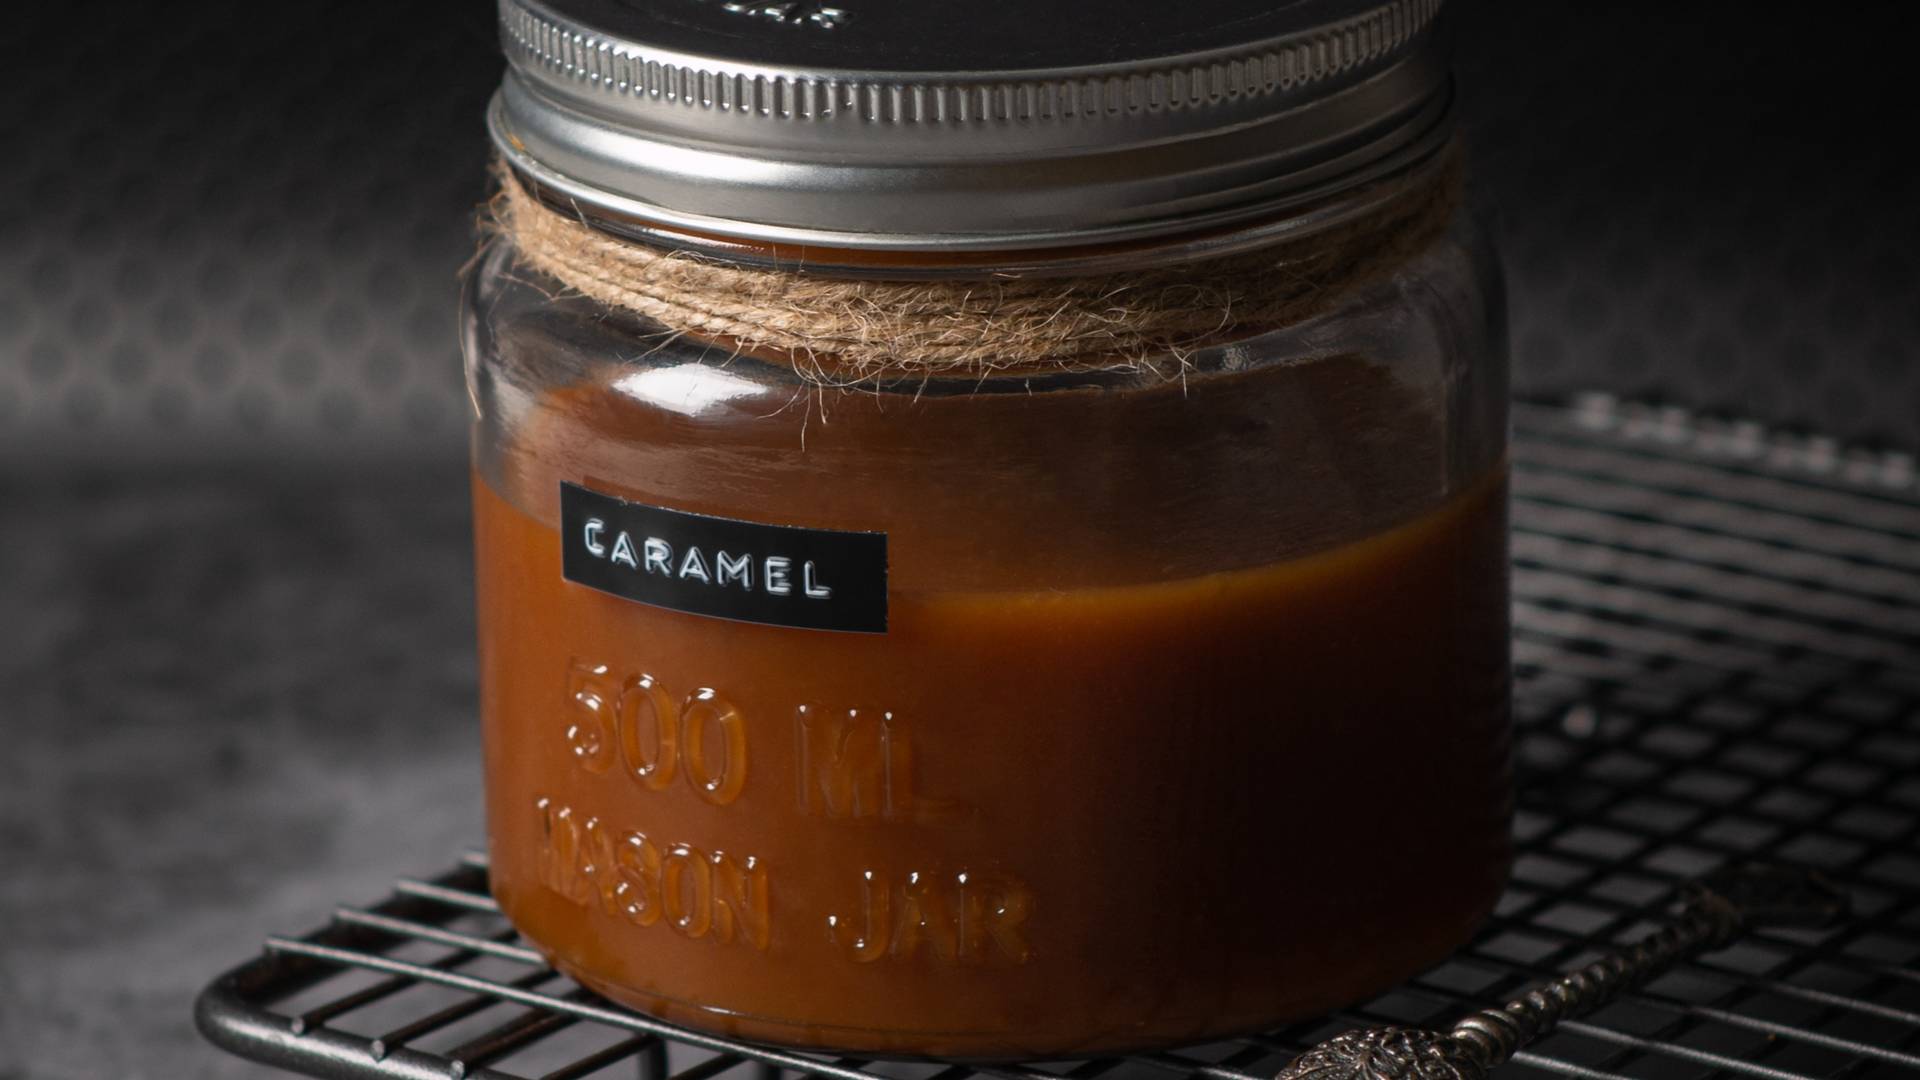 Świętujemy Dzień Karmelu. Przepis na najlepszy, domowy karmel, że aż palce lizać!